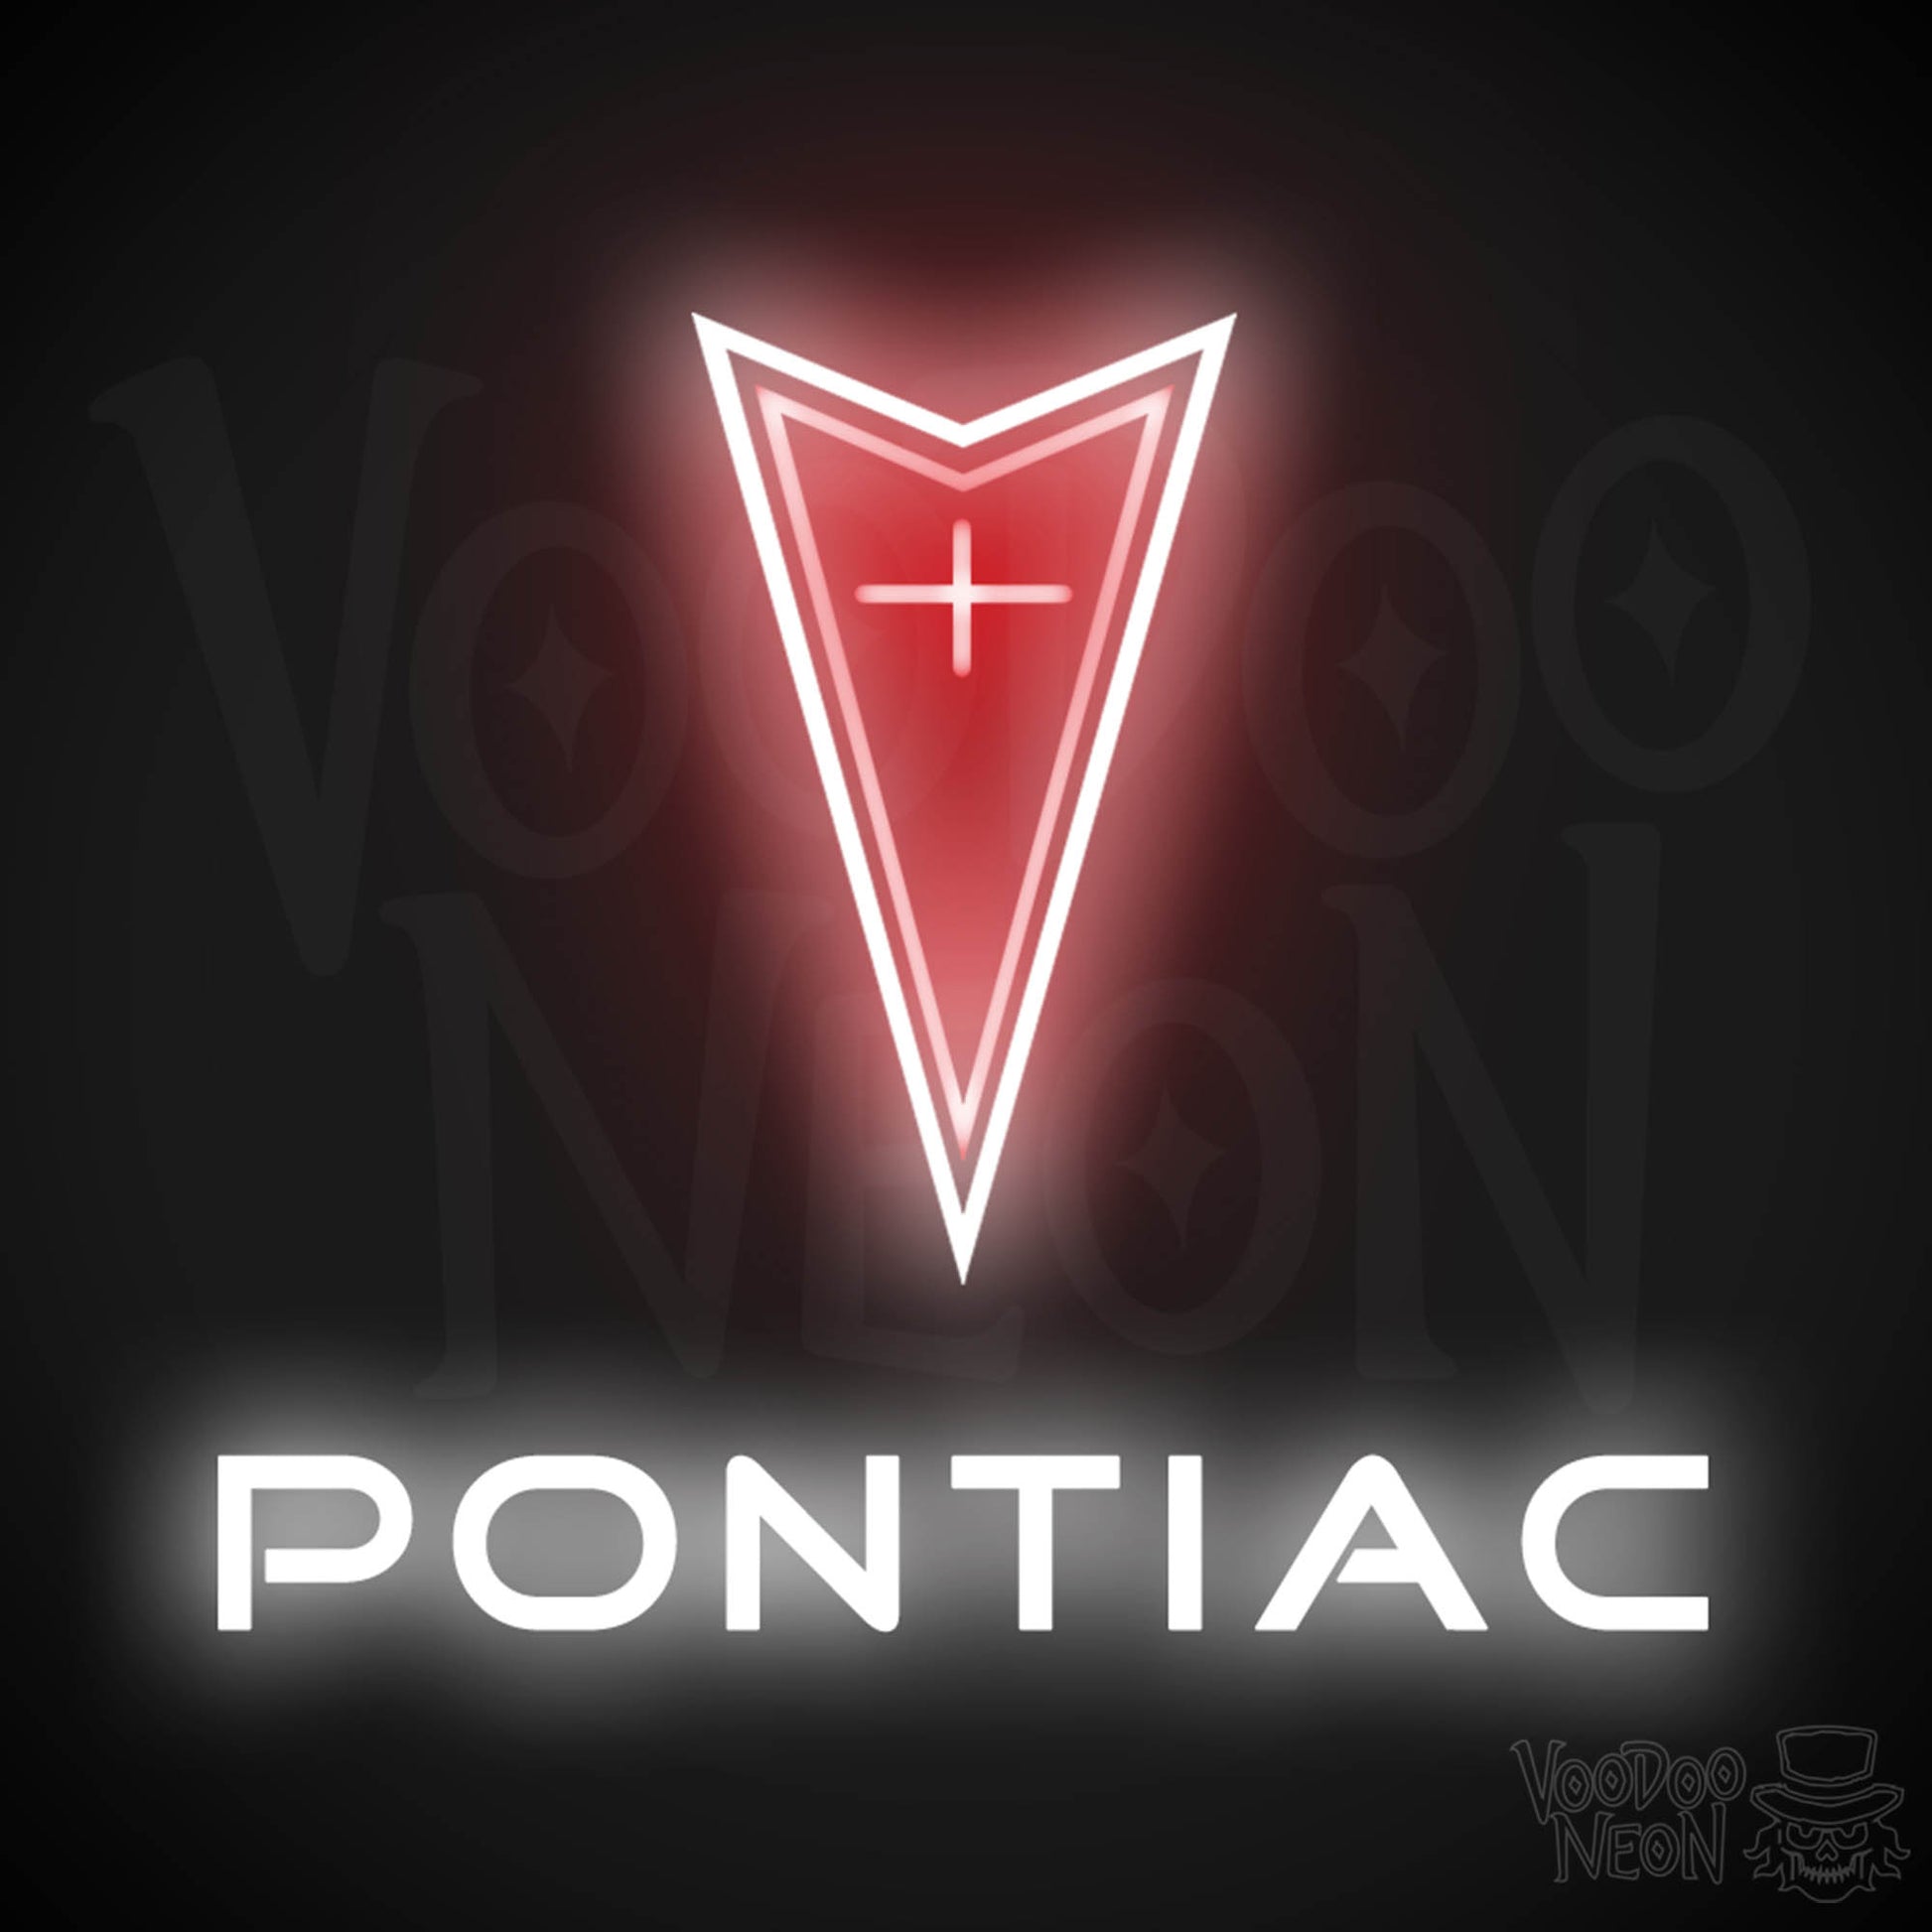 Pontiac Neon Sign - Pontiac Sign - Pontiac Decor - Wall Art - Color Multi-Color